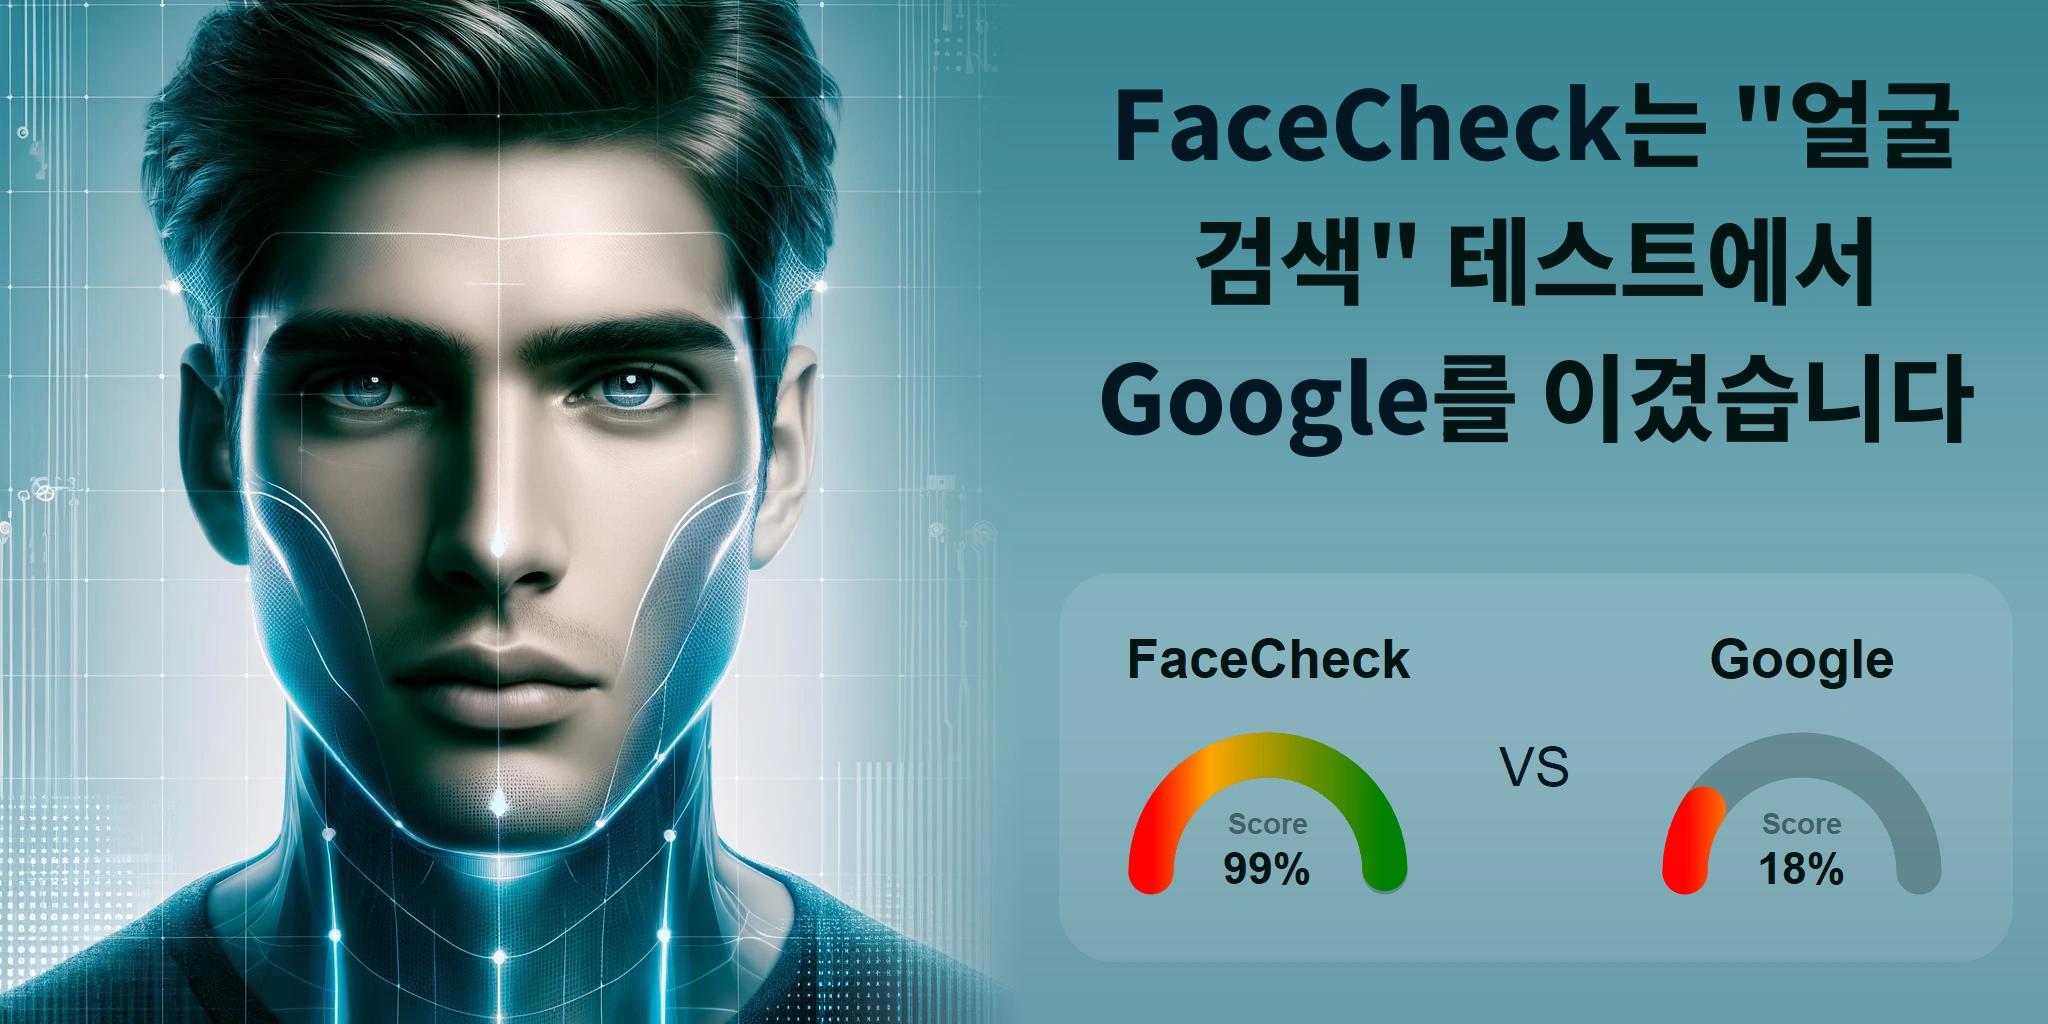 얼굴 검색에 더 좋은 것은 무엇입니까: <br>FaceCheck 또는 Google?